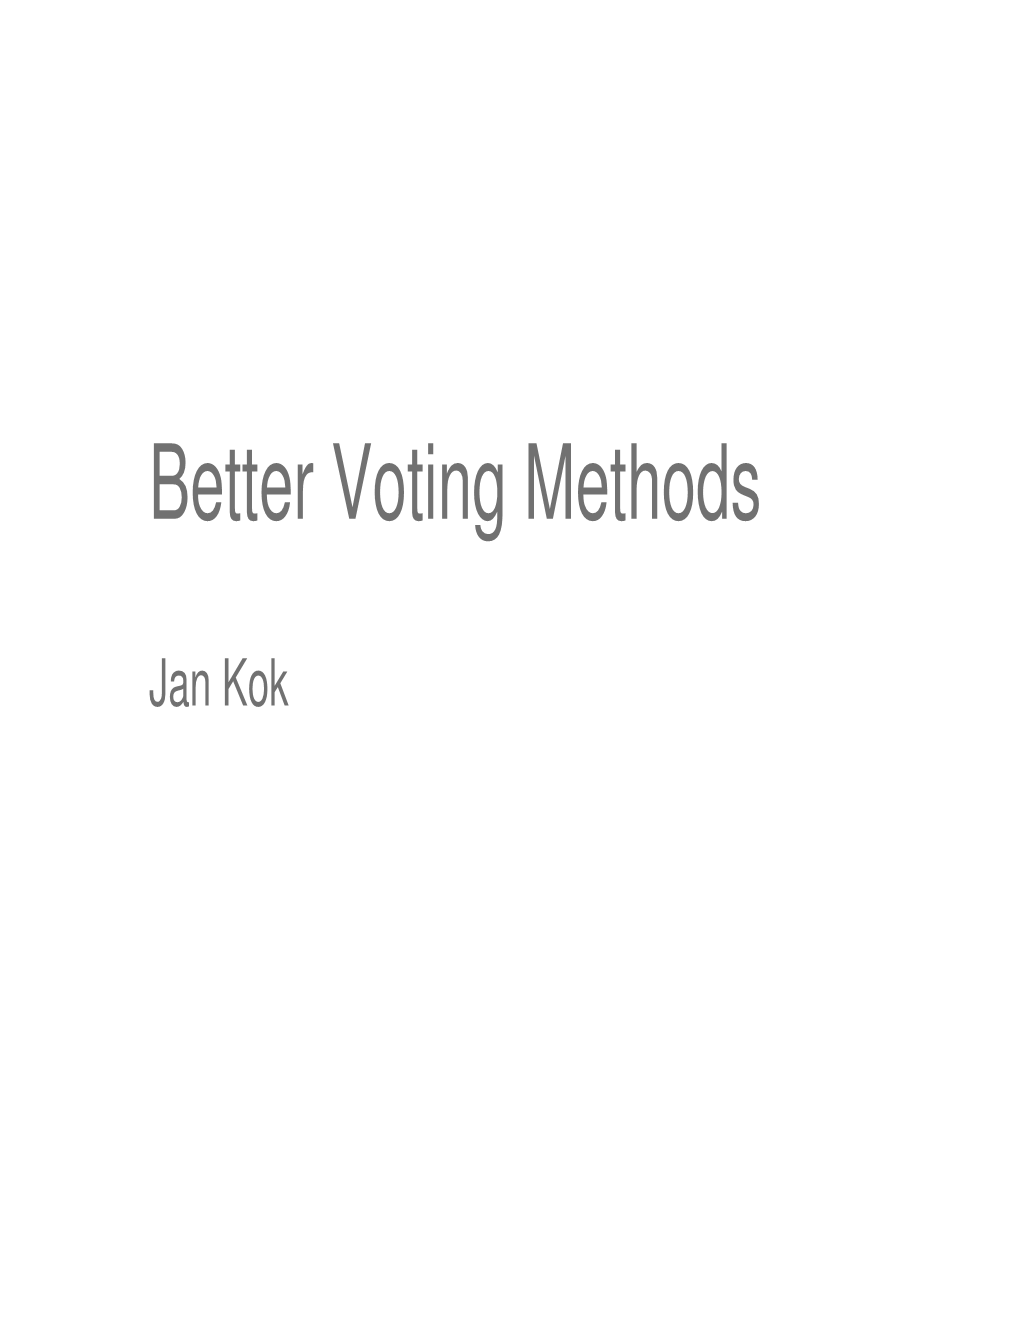 Better Voting Methods